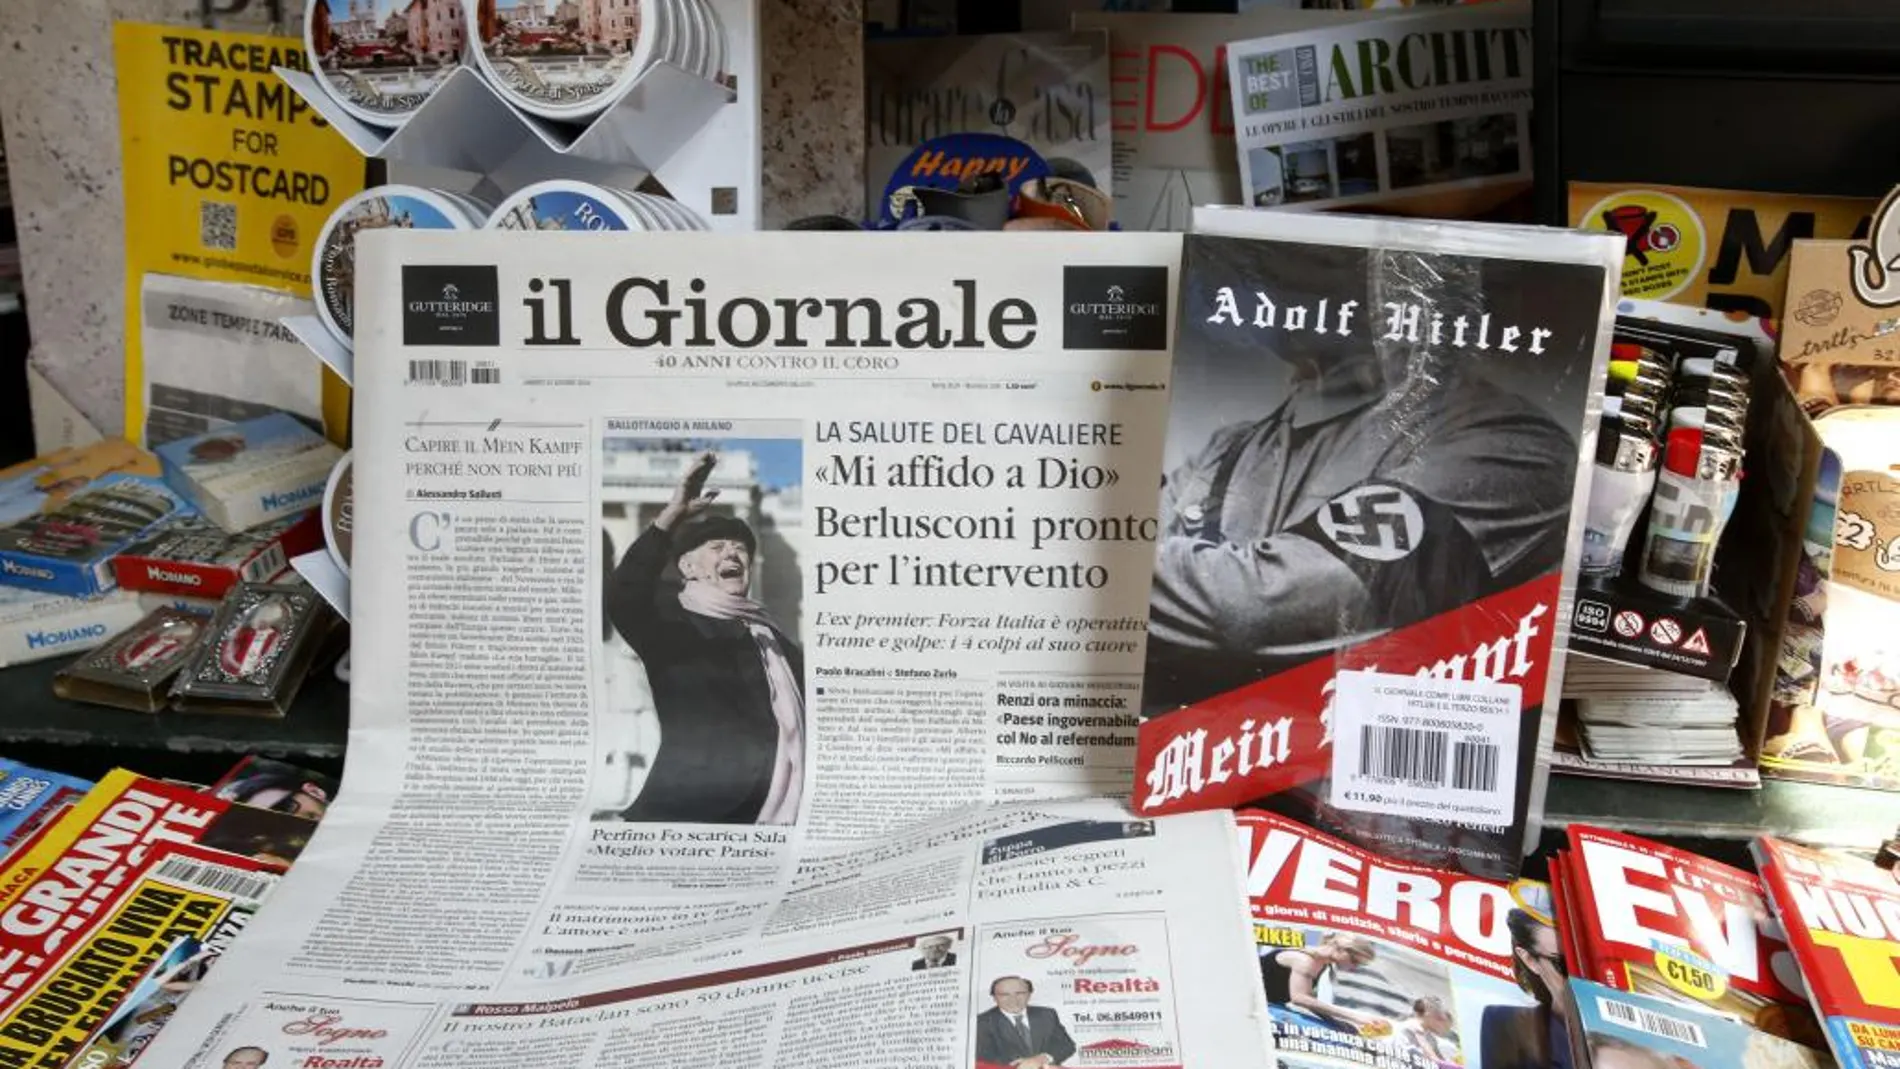 El diario, junto al libro de Hitler, en un quiosco de prensa en Milán.